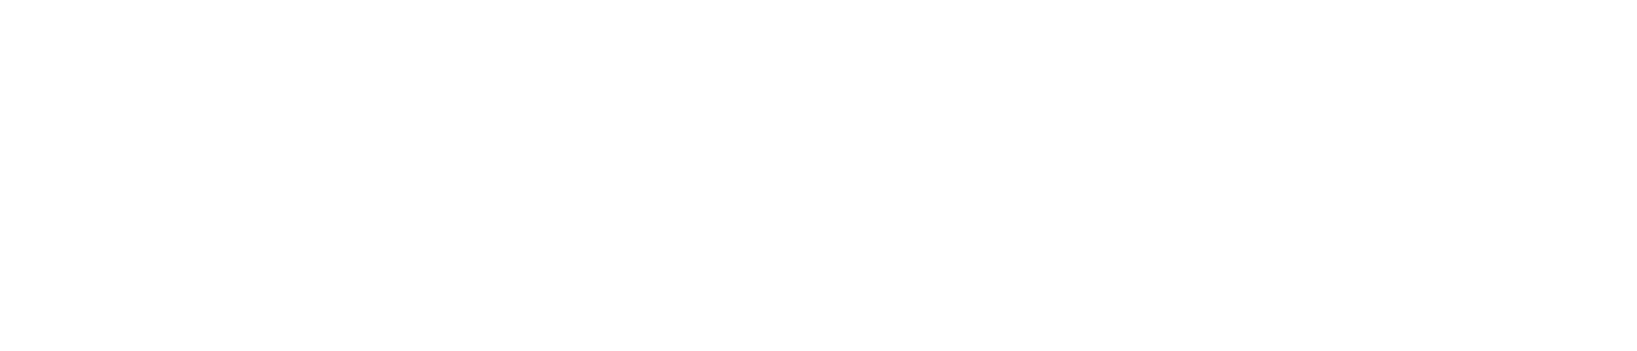 diageo logo vector